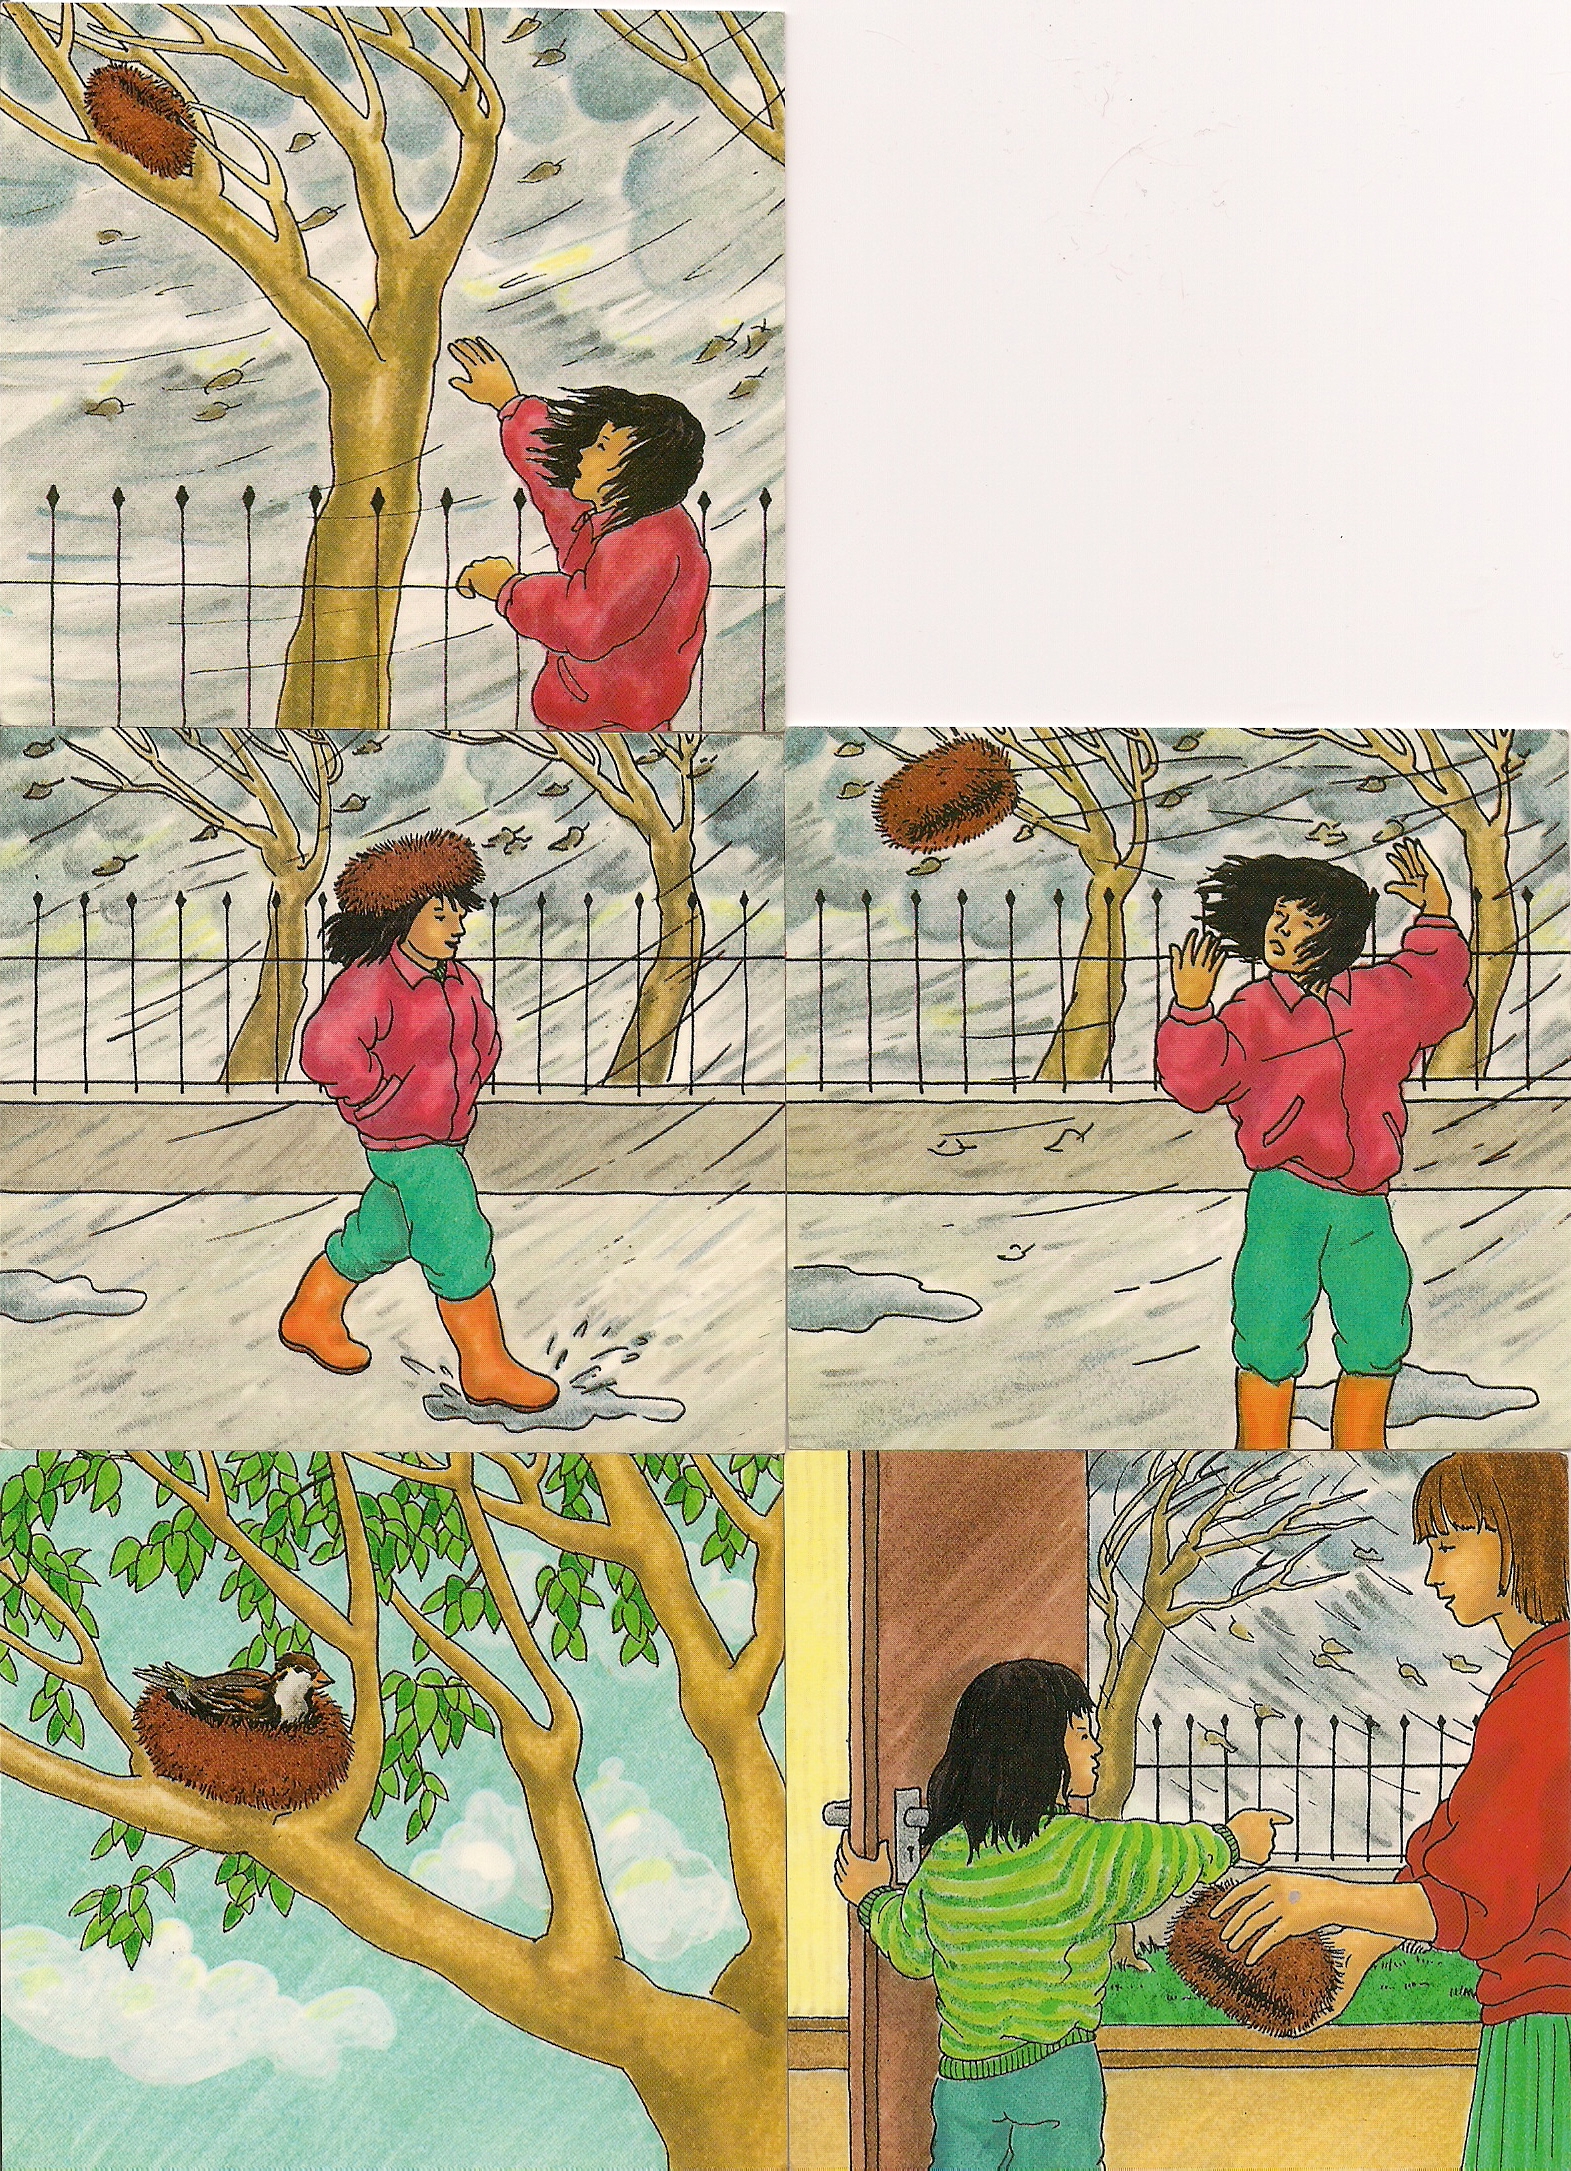 אוסף הסיפורים של כיתת אלמוג by Katia - Illustrated by כיתת אלמוג - Ourboox.com